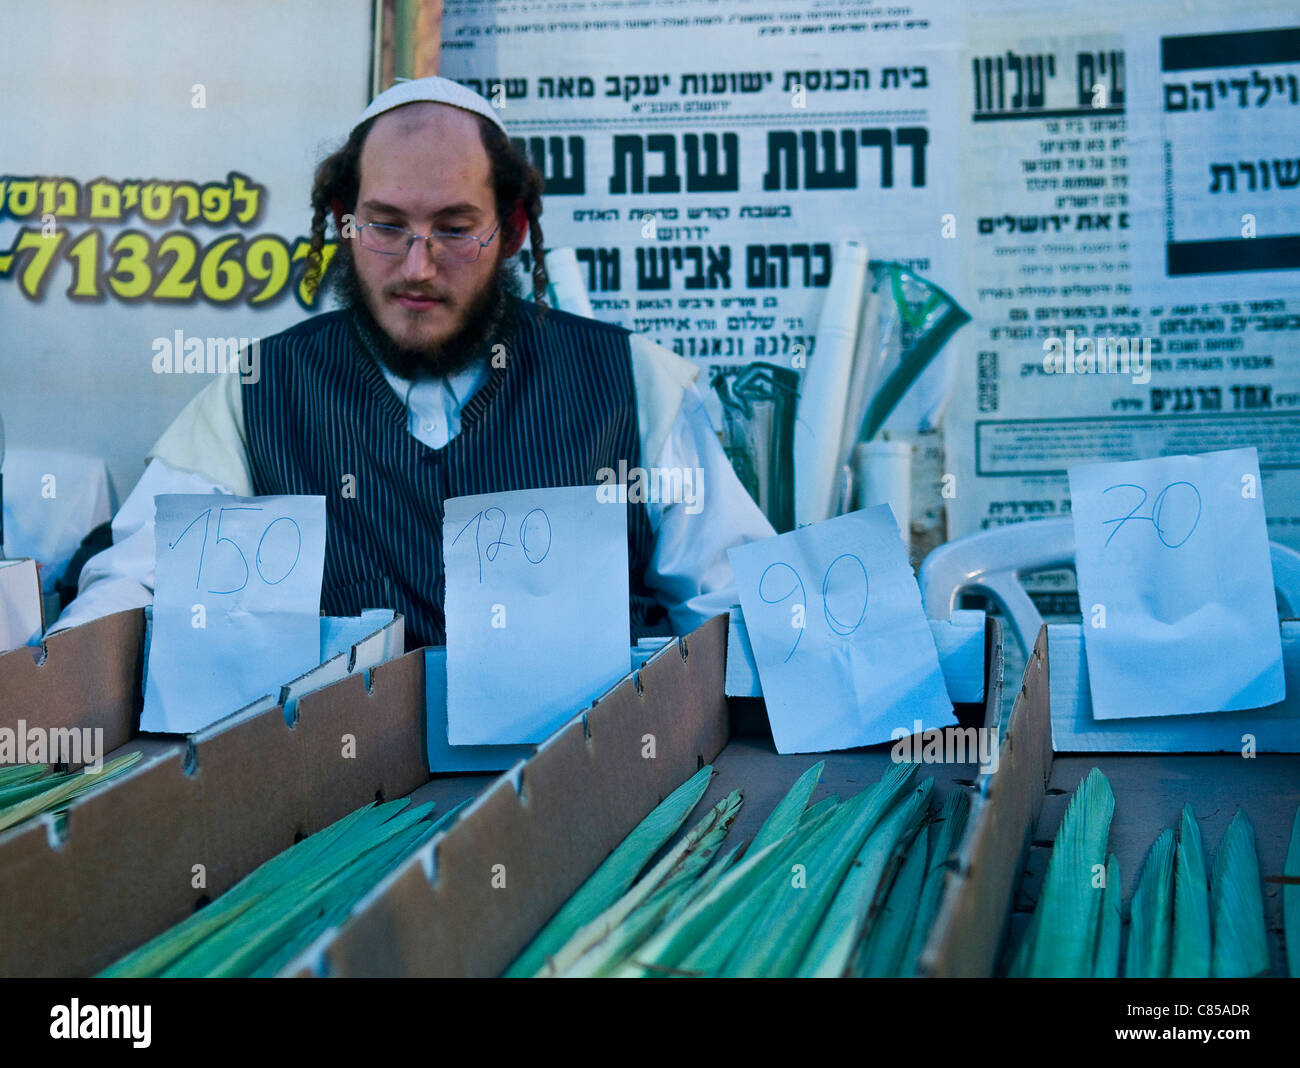 Un homme juif ultra-orthodoxe Loulav vend dans les "quatre" spesies marché de Jérusalem Israël Banque D'Images